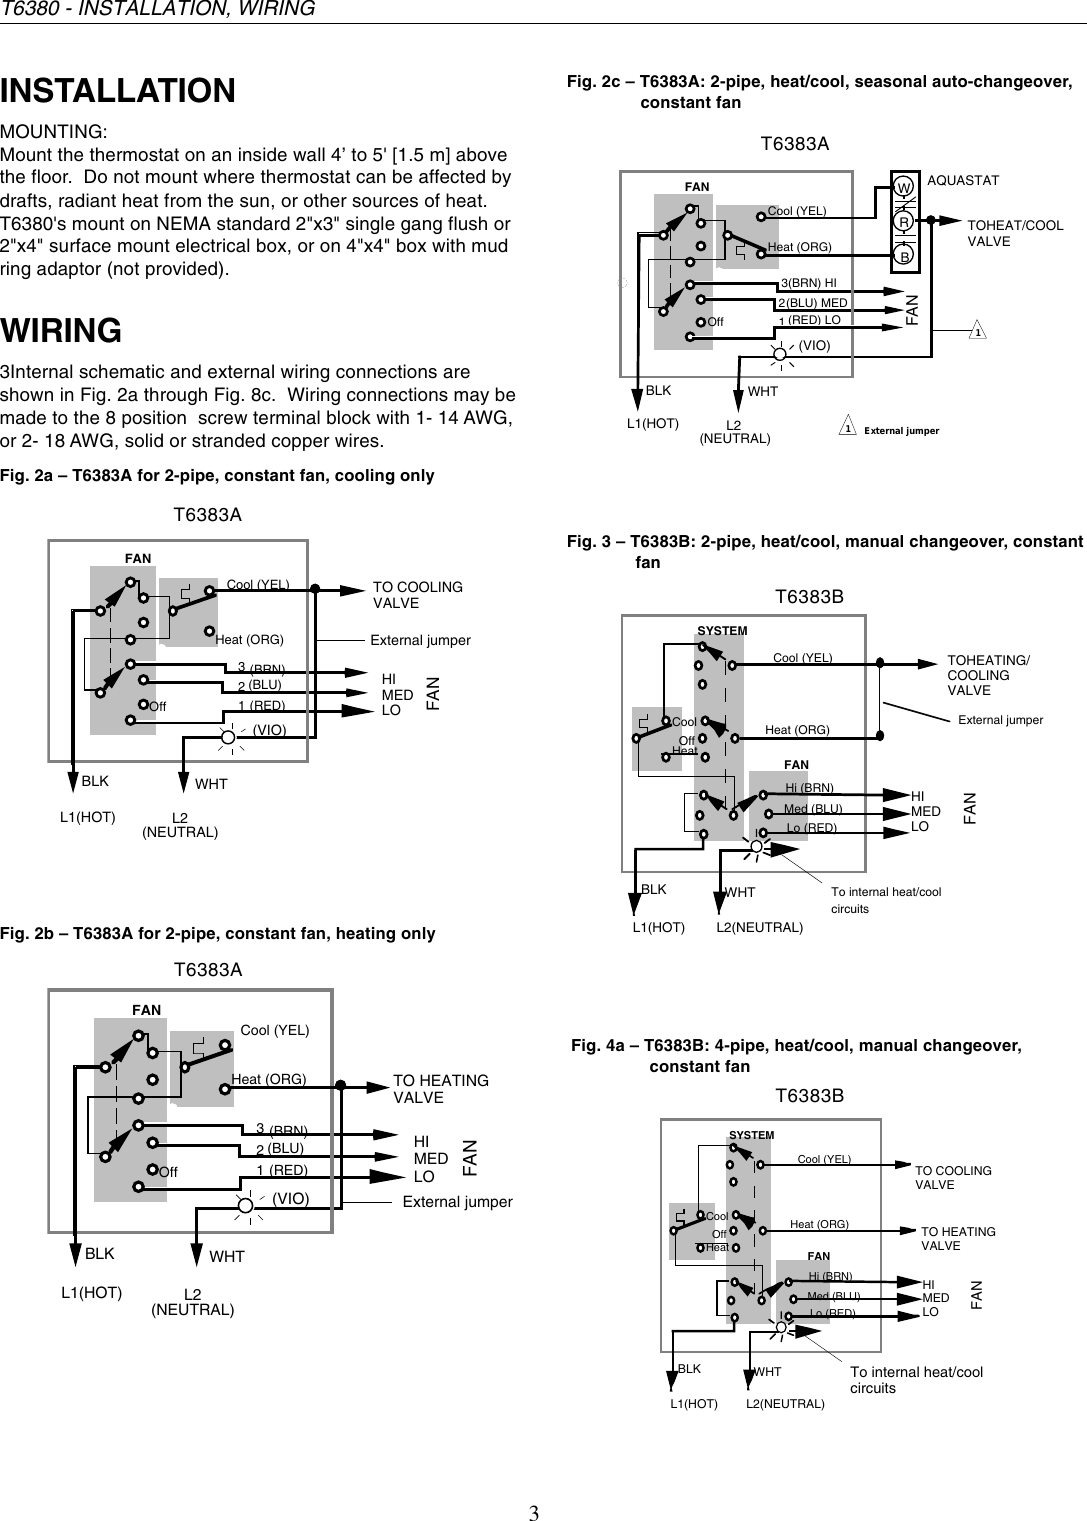 Page 3 of 6 - Honeywell Honeywell-Electronic-Fan-Coil-T6380-Users-Manual- 95C-10758 - T6380 Series Electronic Fan Coil Thernostat  Honeywell-electronic-fan-coil-t6380-users-manual